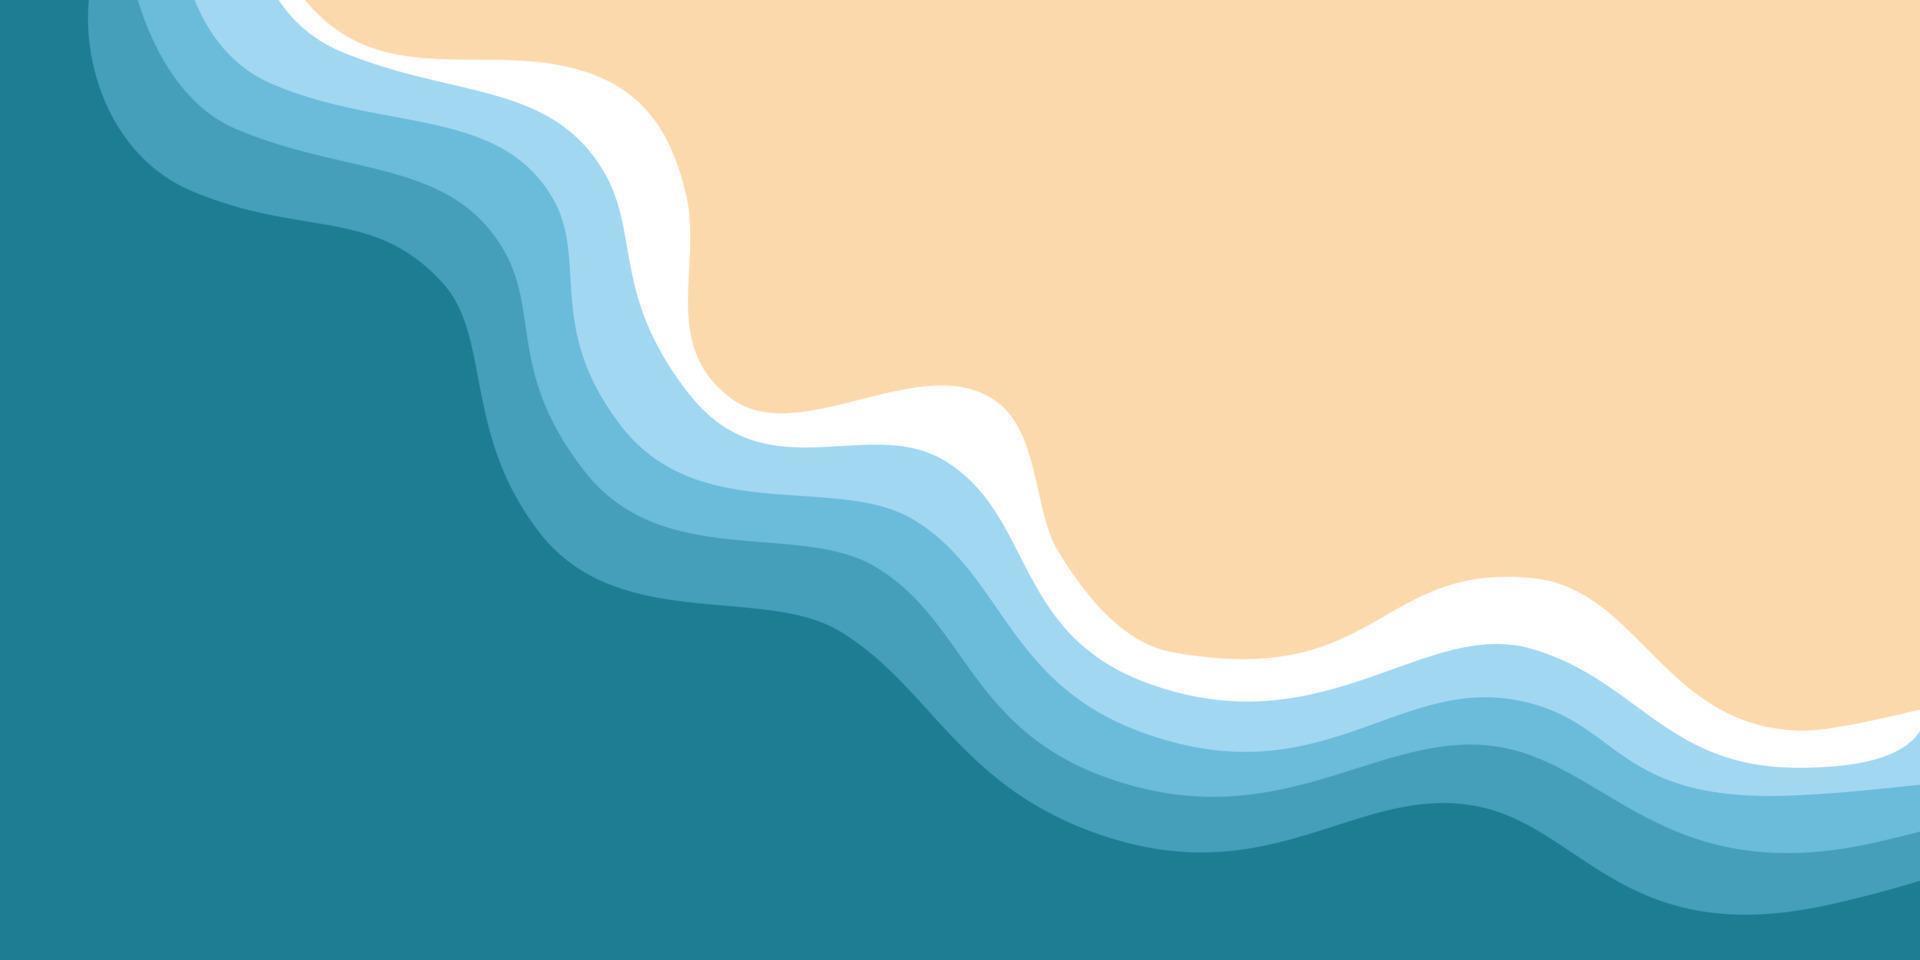 abstrakter hintergrund des blauen meeres und des sommerstrandes für banner-, einladungs-, poster- oder website-design. vektor